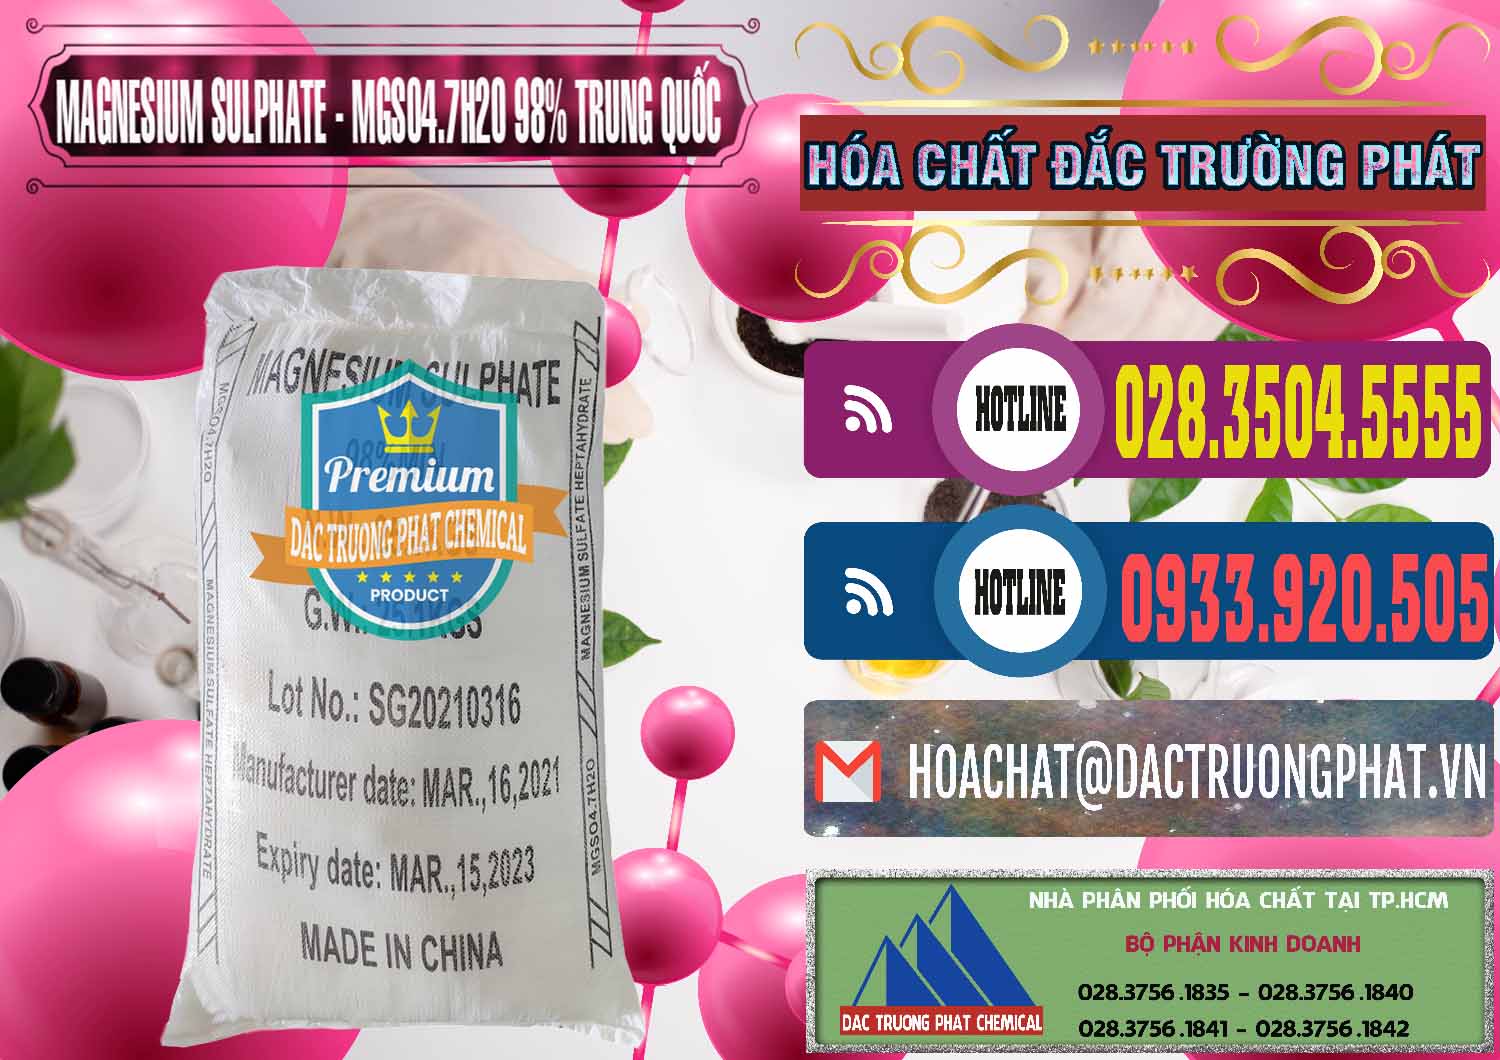 Đơn vị chuyên bán & cung ứng MGSO4.7H2O – Magnesium Sulphate 98% Trung Quốc China - 0229 - Cty chuyên bán - cung cấp hóa chất tại TP.HCM - muabanhoachat.com.vn